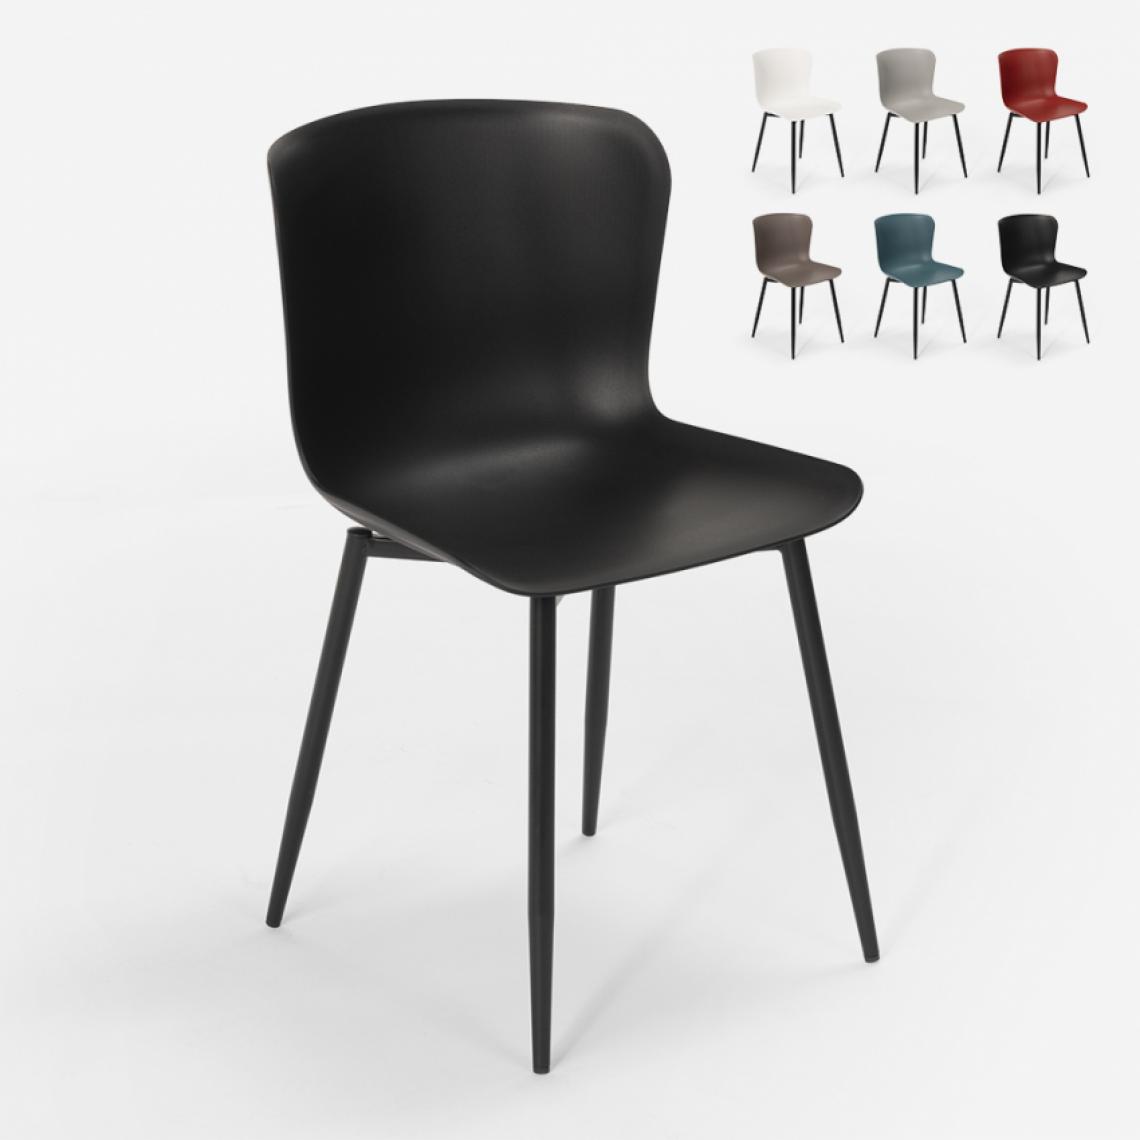 Ahd Amazing Home Design - Chaise design moderne en polypropylène et métal pour cuisine bar restaurant Chloe, Couleur: Noir - Chaises